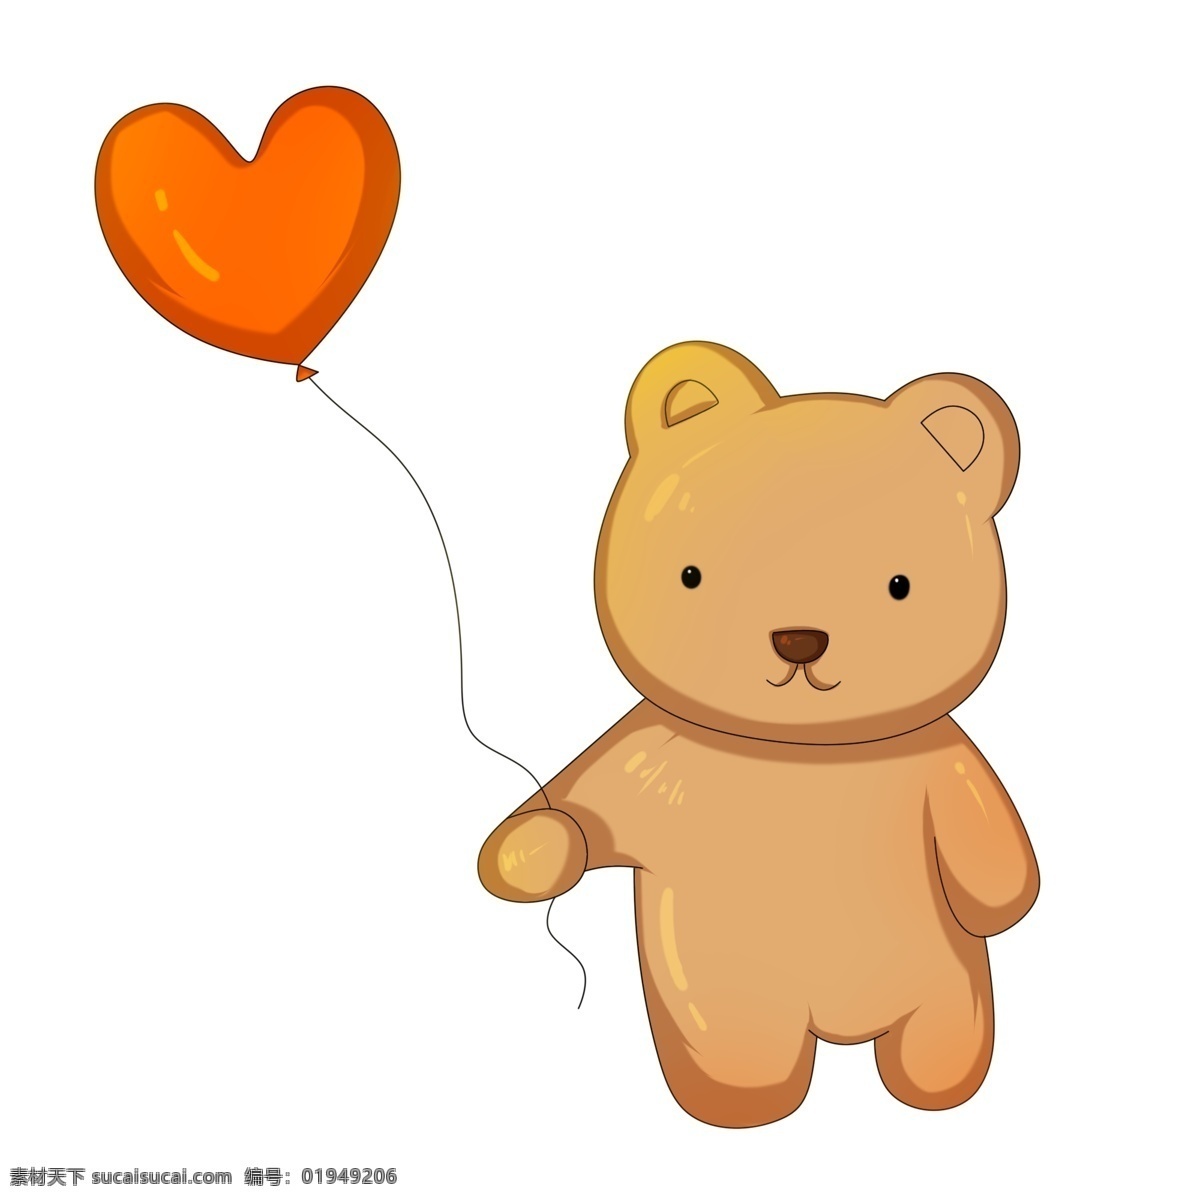 心形 气球 小 熊 红色心形气球 可爱的小熊 棕色的小熊 红色漂浮气球 卡通小动物 小动物插画